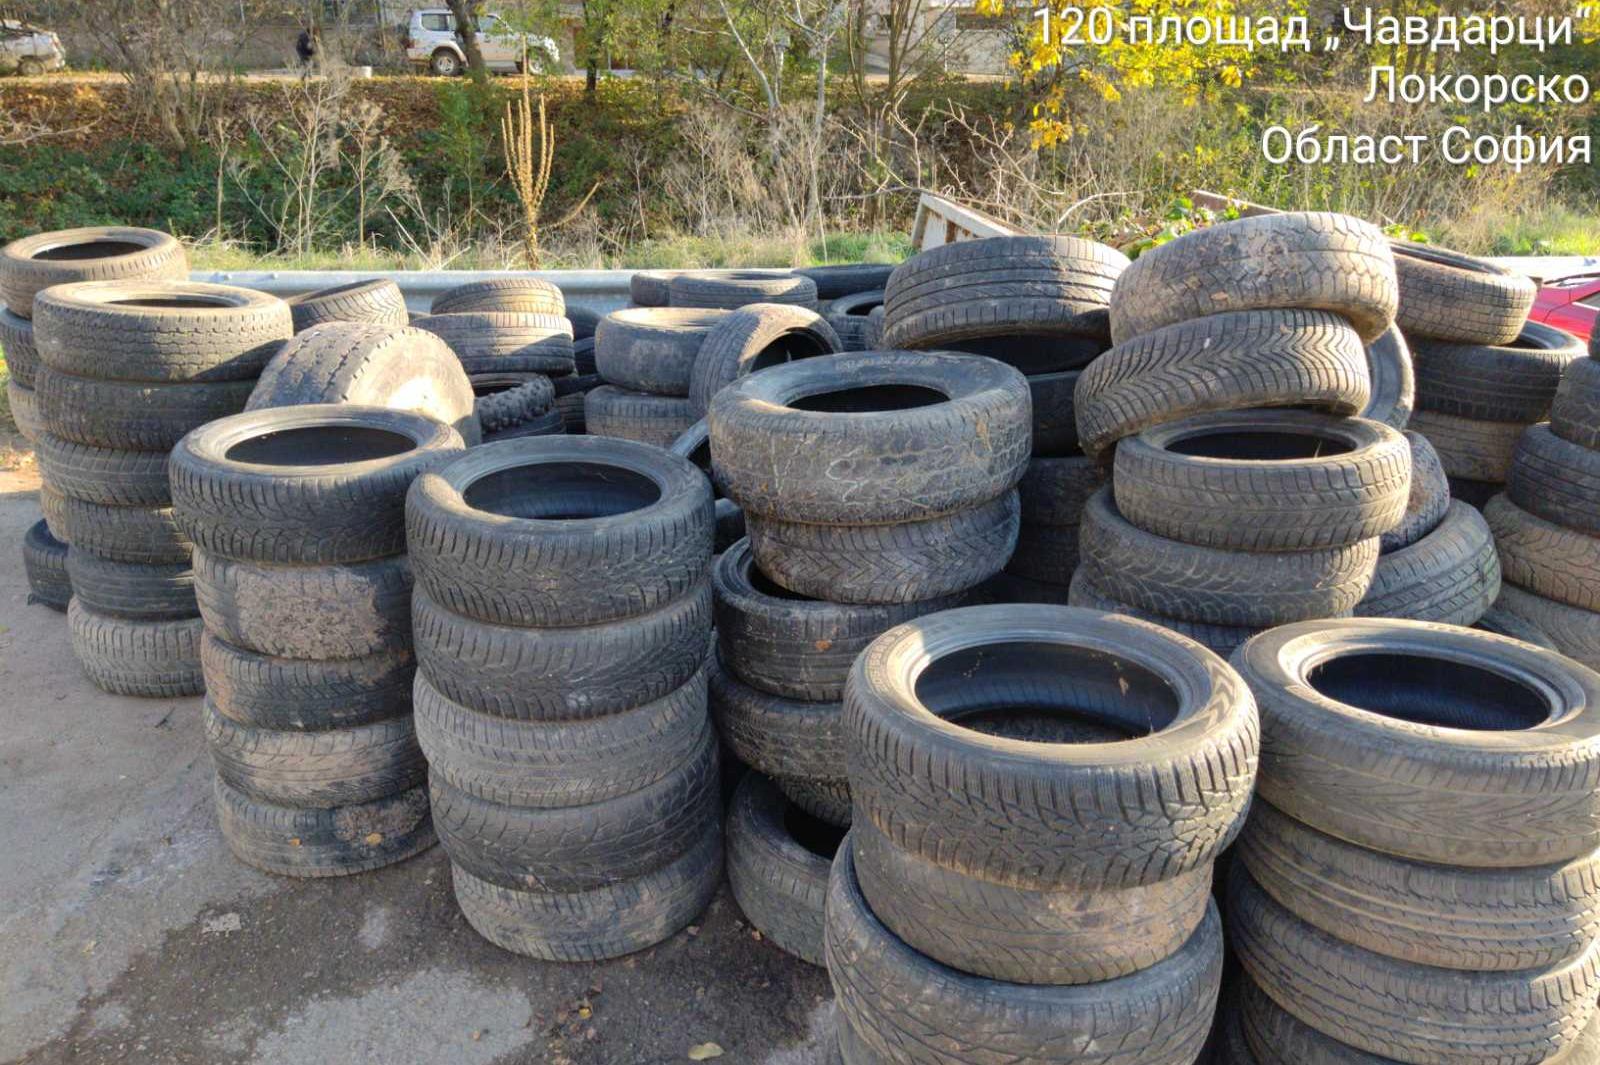 Втора инициатива за събиране на стари гуми- този път в село Доброславци